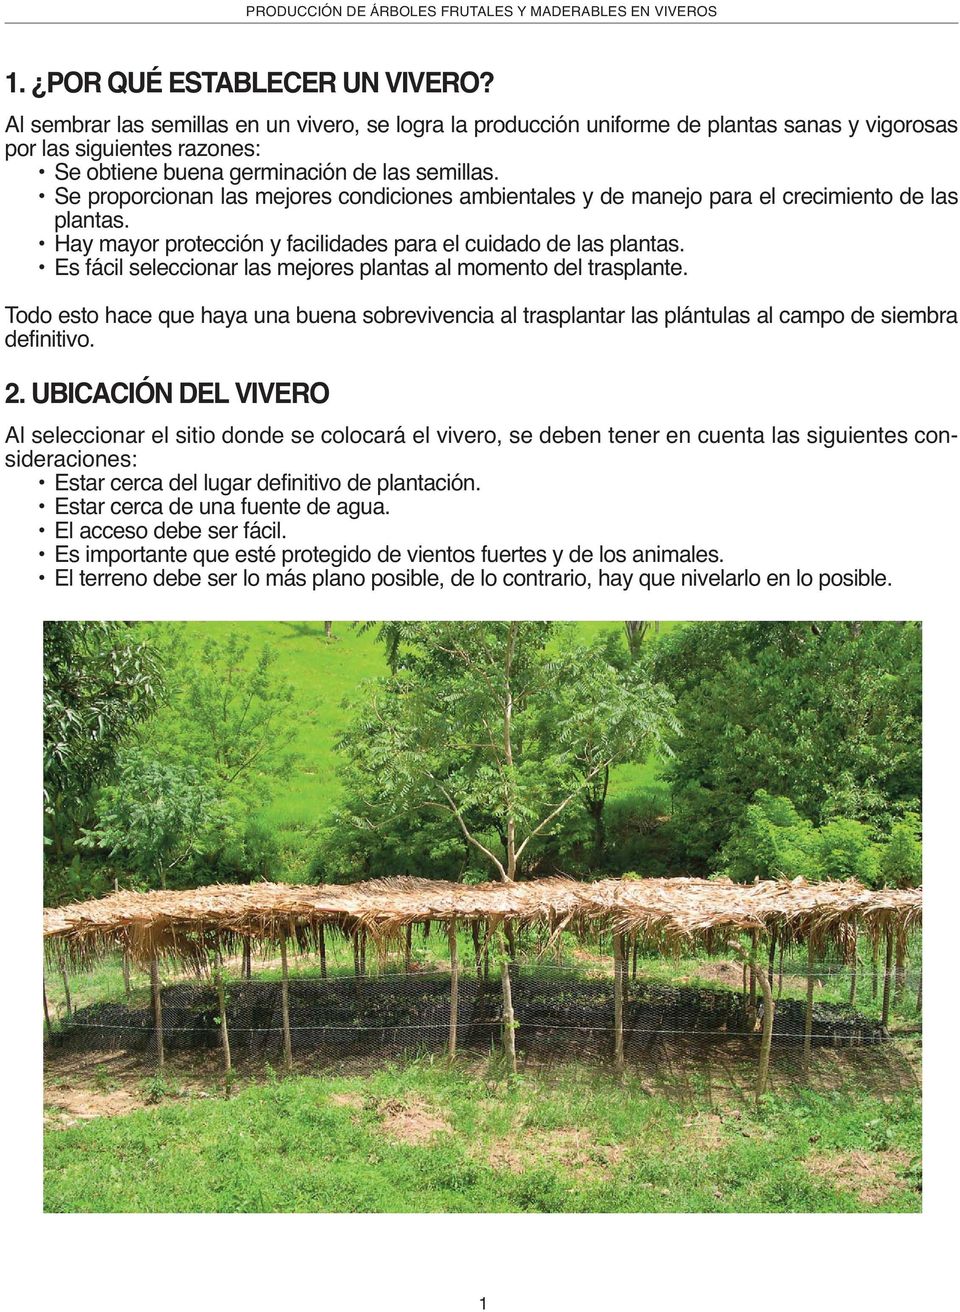 PRODUCCIÓN DE ÁRBOLES FRUTALES Y MADERABLES EN VIVEROS - PDF Free Download